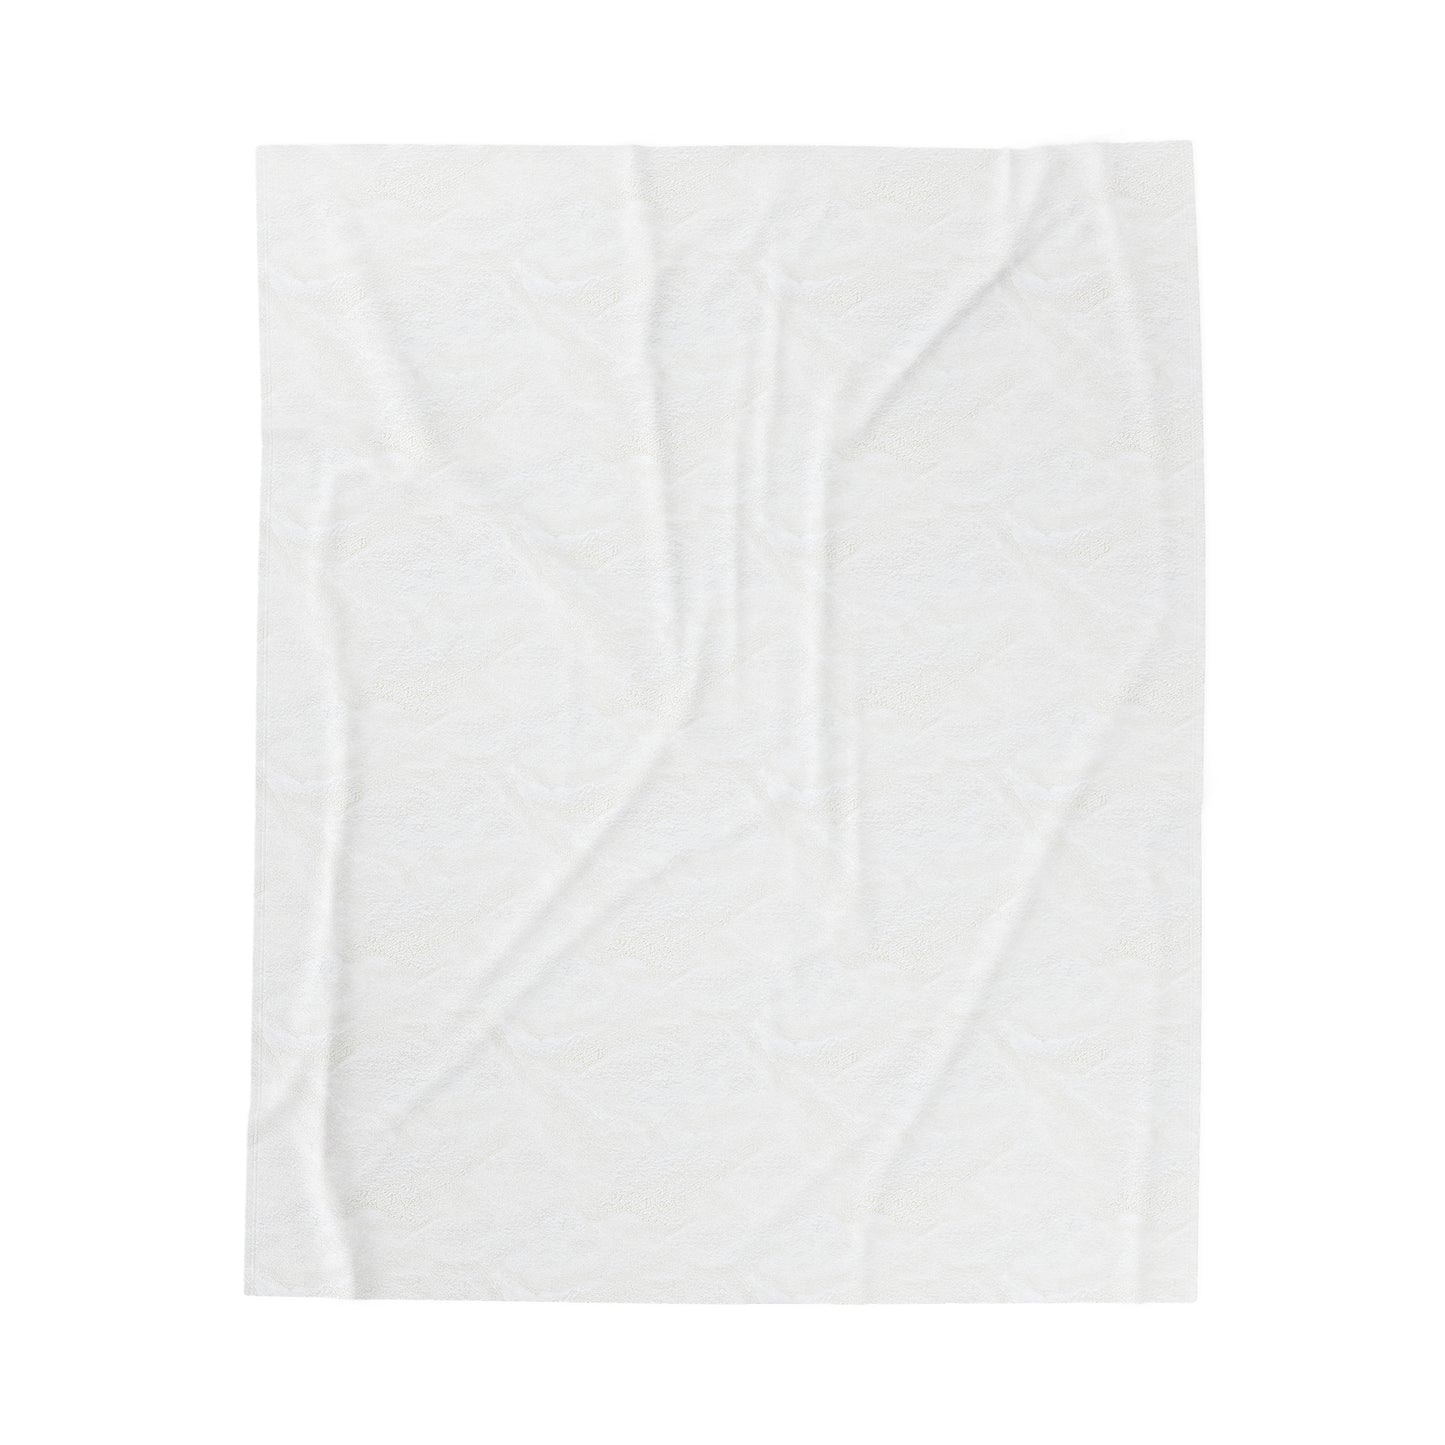 ABSTRACT SHAPES 102 - Velveteen Plush Blanket